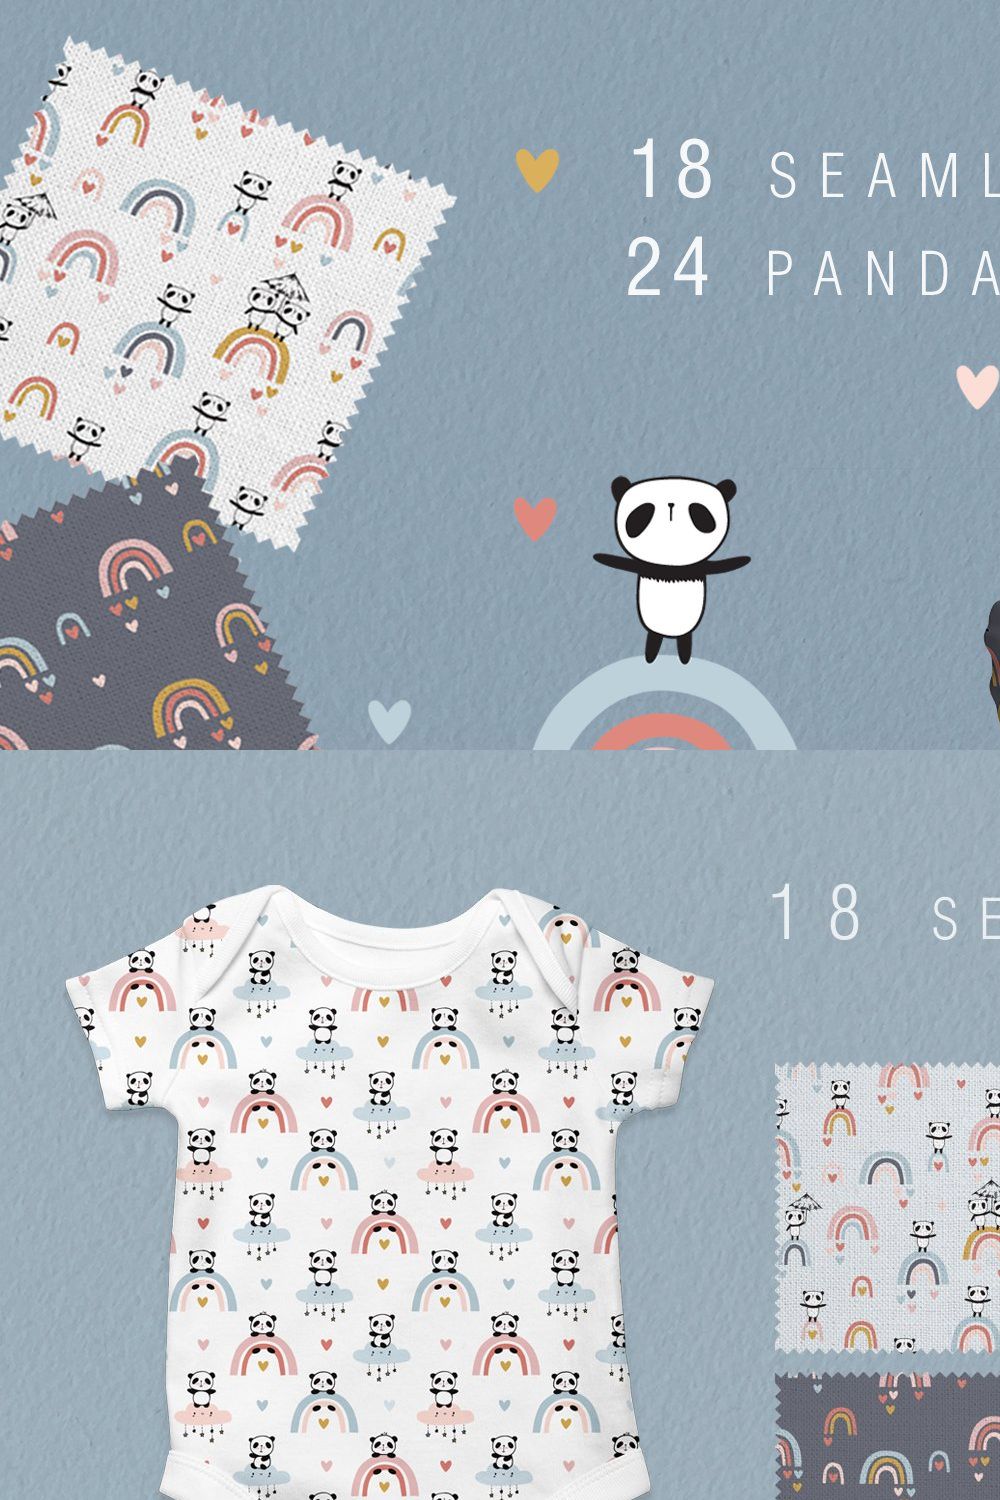 Cute pandas & rainbows  patterns pinterest preview image.